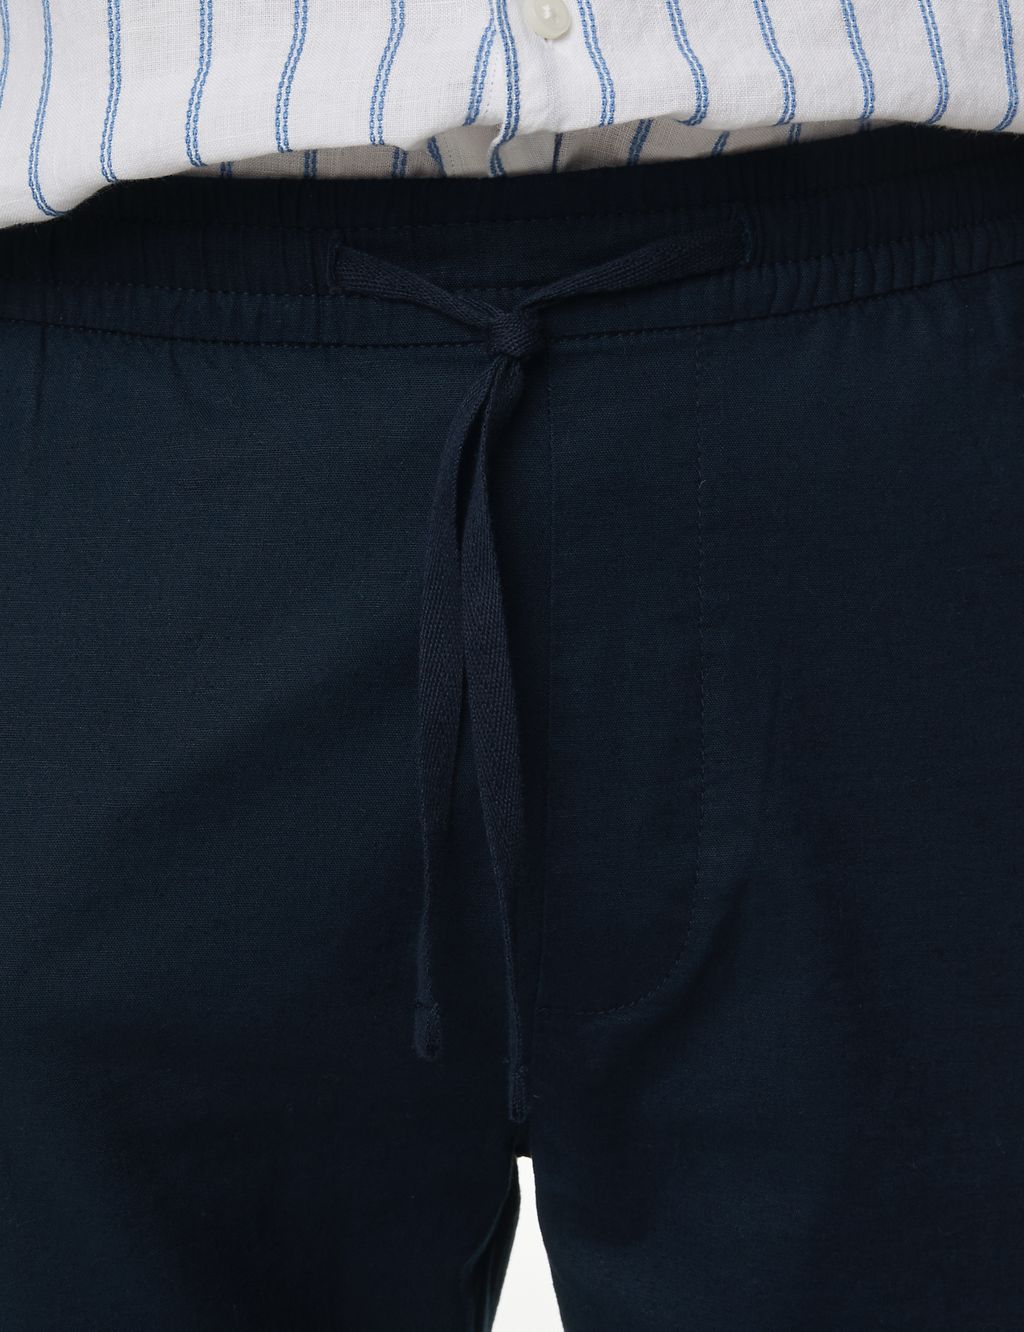 Linen Blend Elasticated Waist Stretch Shorts 5 of 7